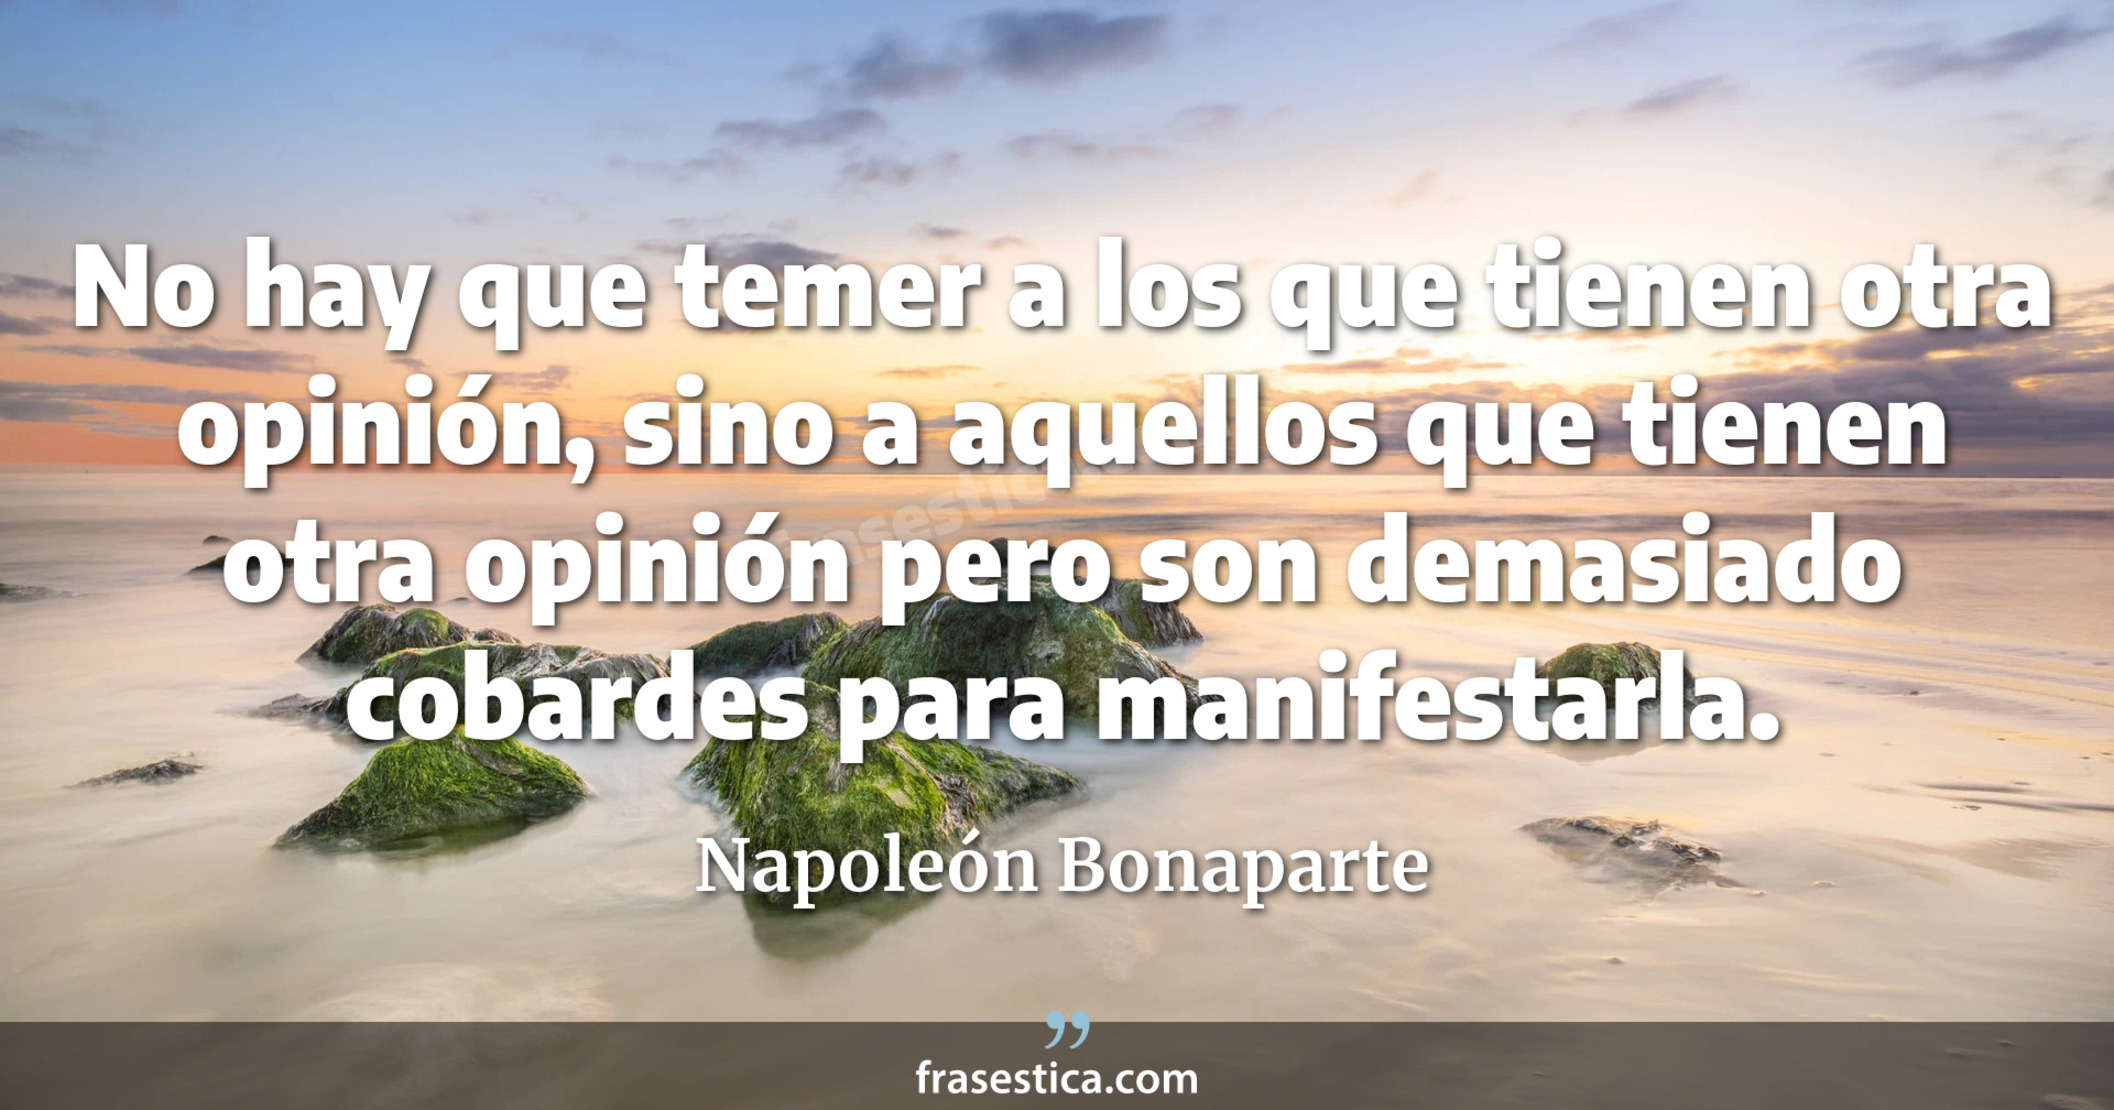 No hay que temer a los que tienen otra opinión, sino a aquellos que tienen otra opinión pero son demasiado cobardes para manifestarla. - Napoleón Bonaparte